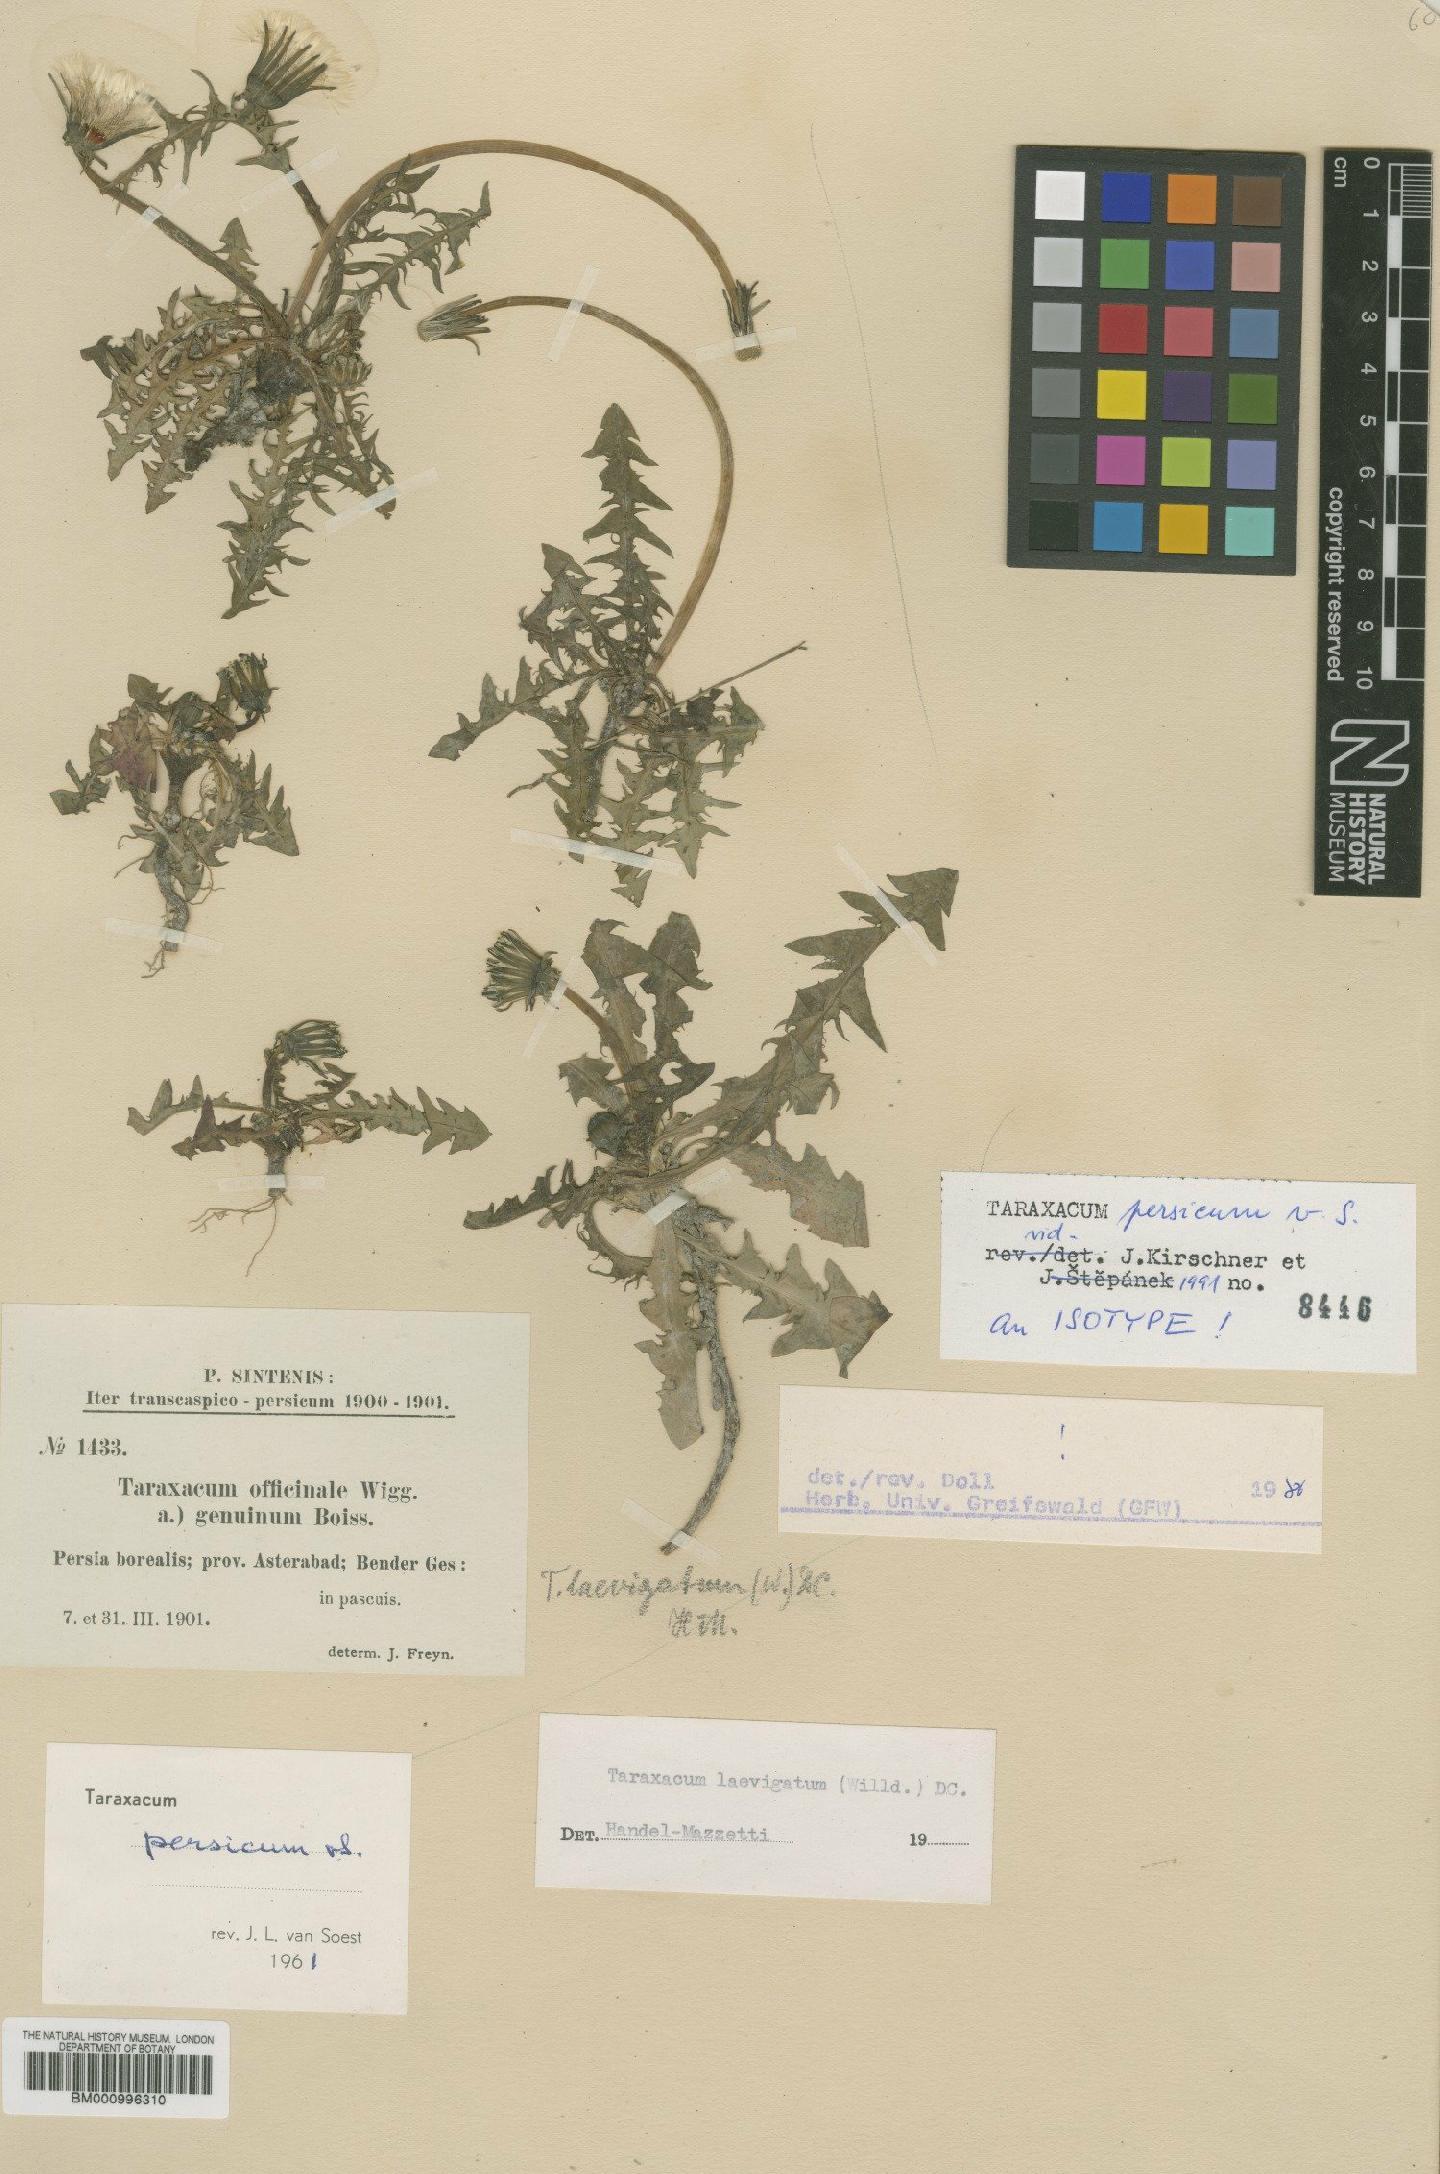 To NHMUK collection (Taraxacum persicum Soest; Type; NHMUK:ecatalogue:481756)